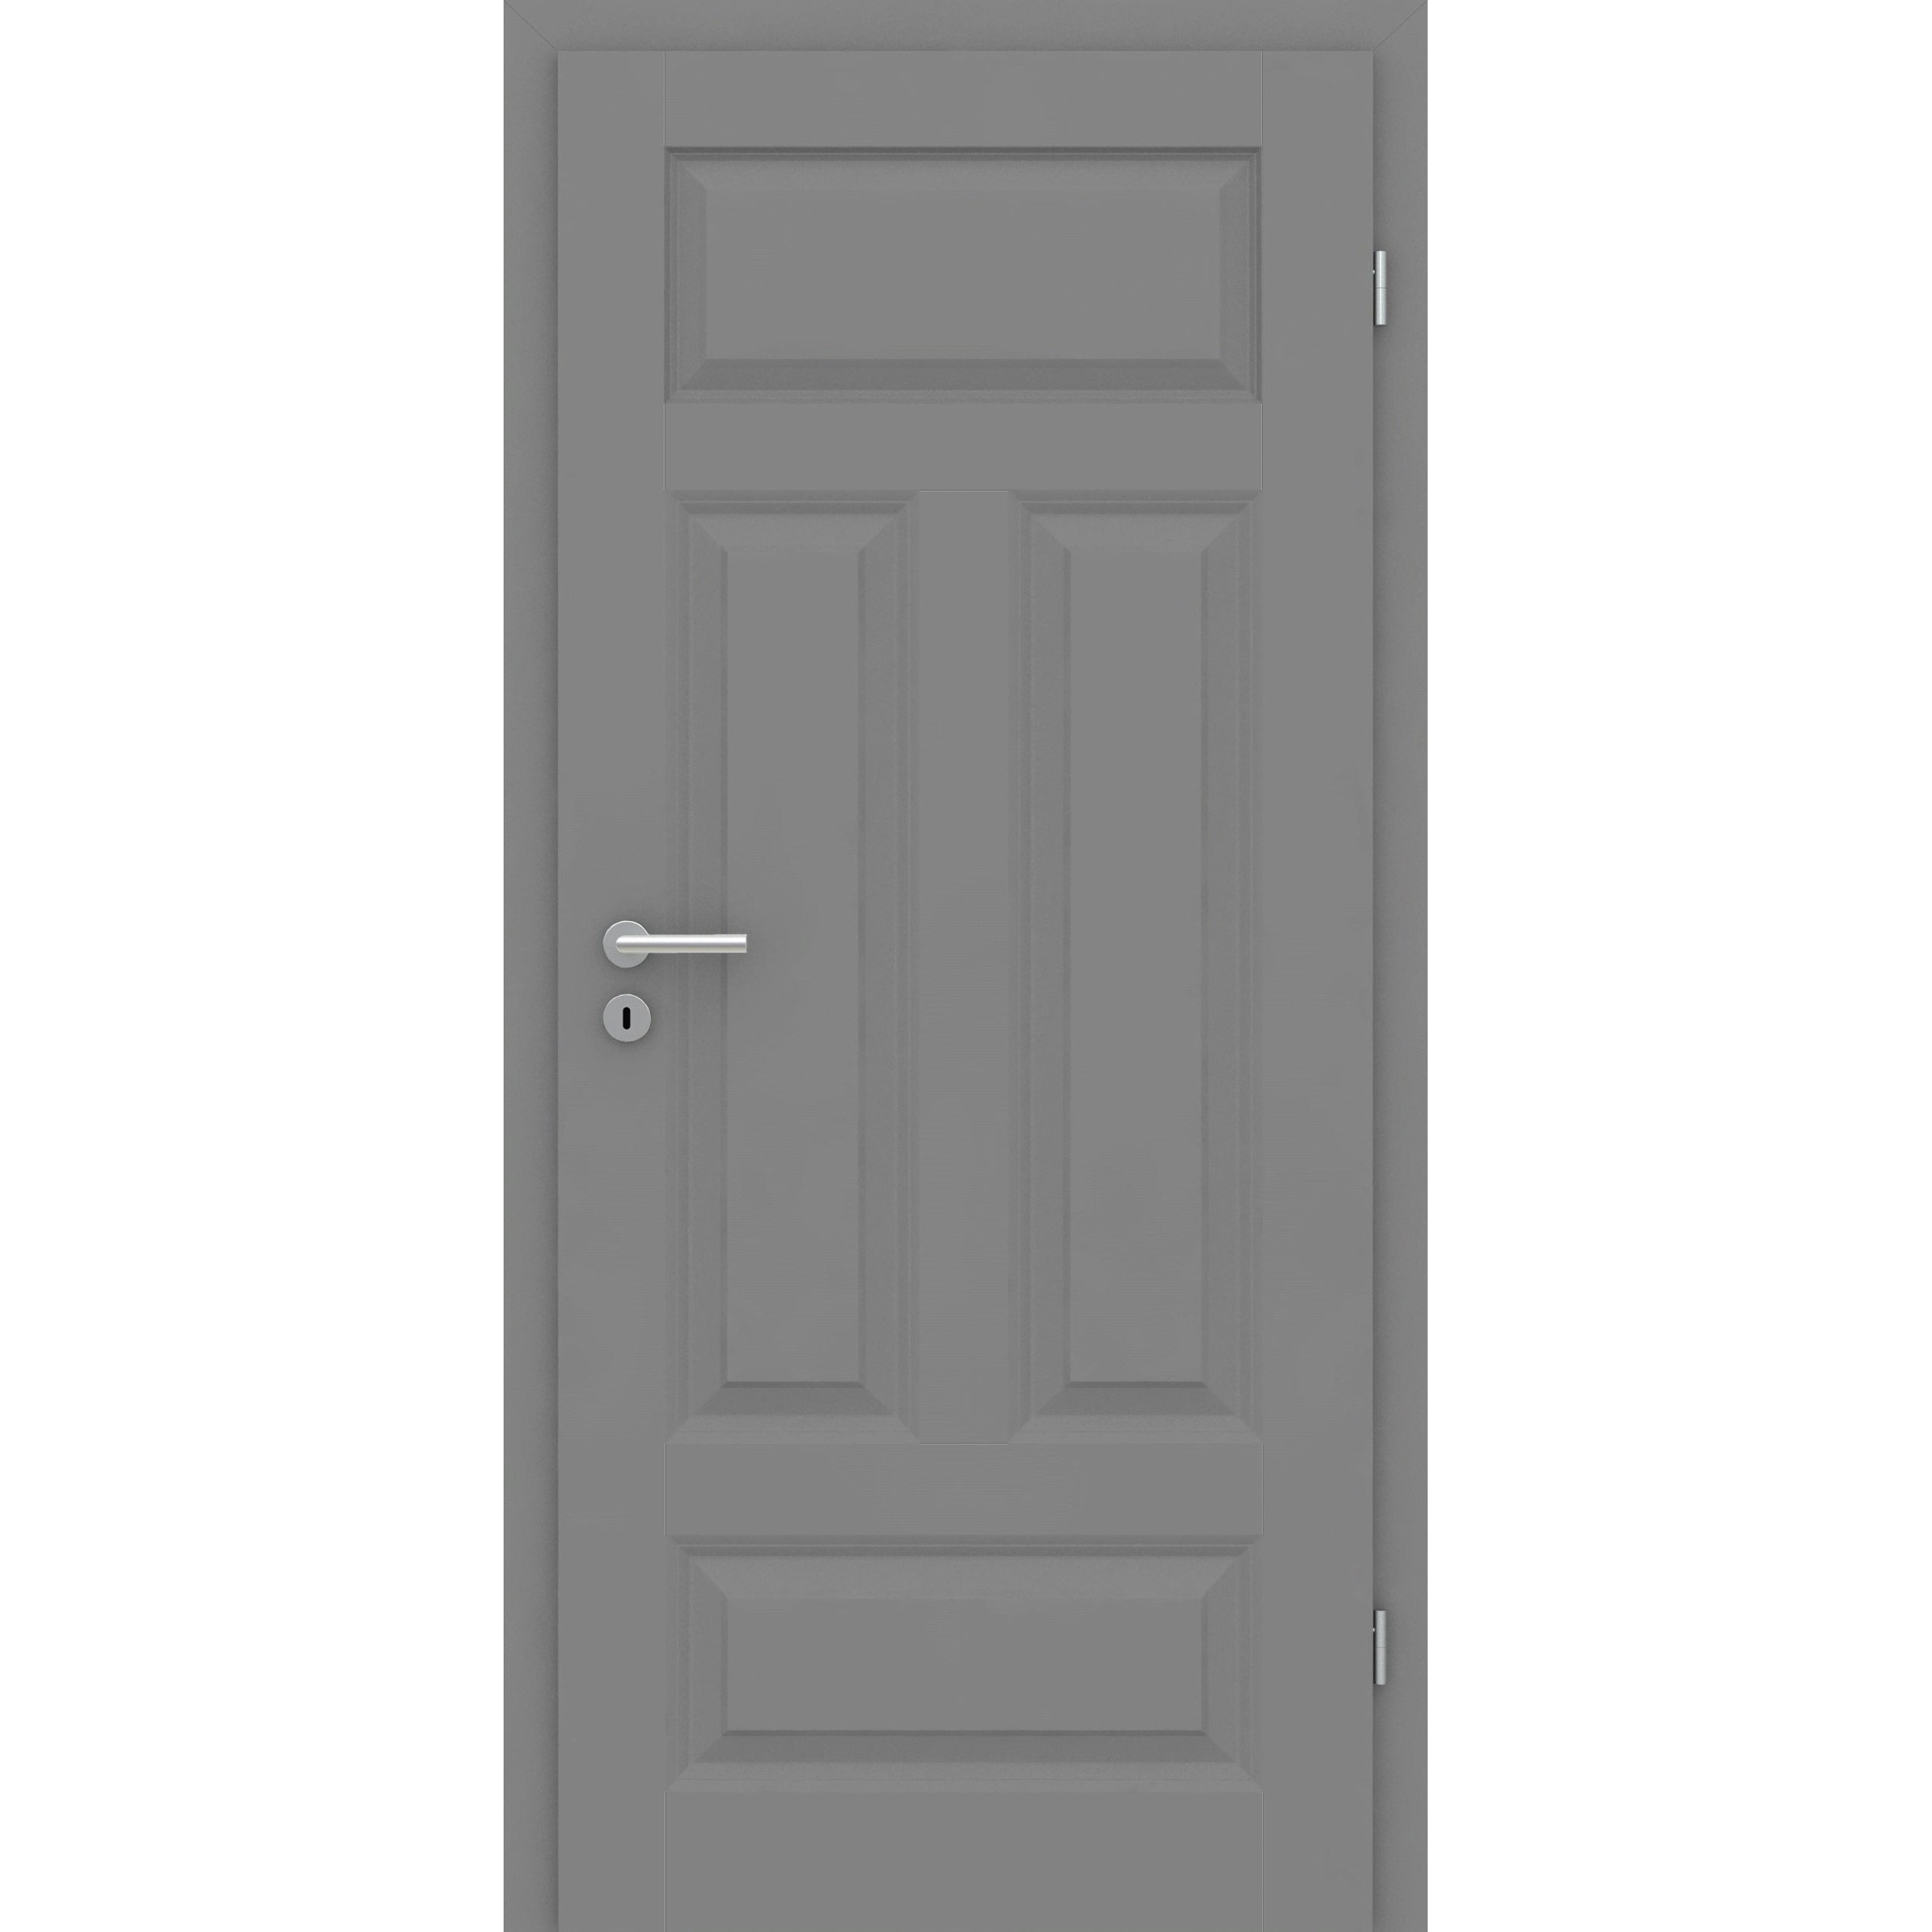 Zimmertür mit Zarge grau 4 Kassetten Quer Designkante - Modell Stiltür KQ47